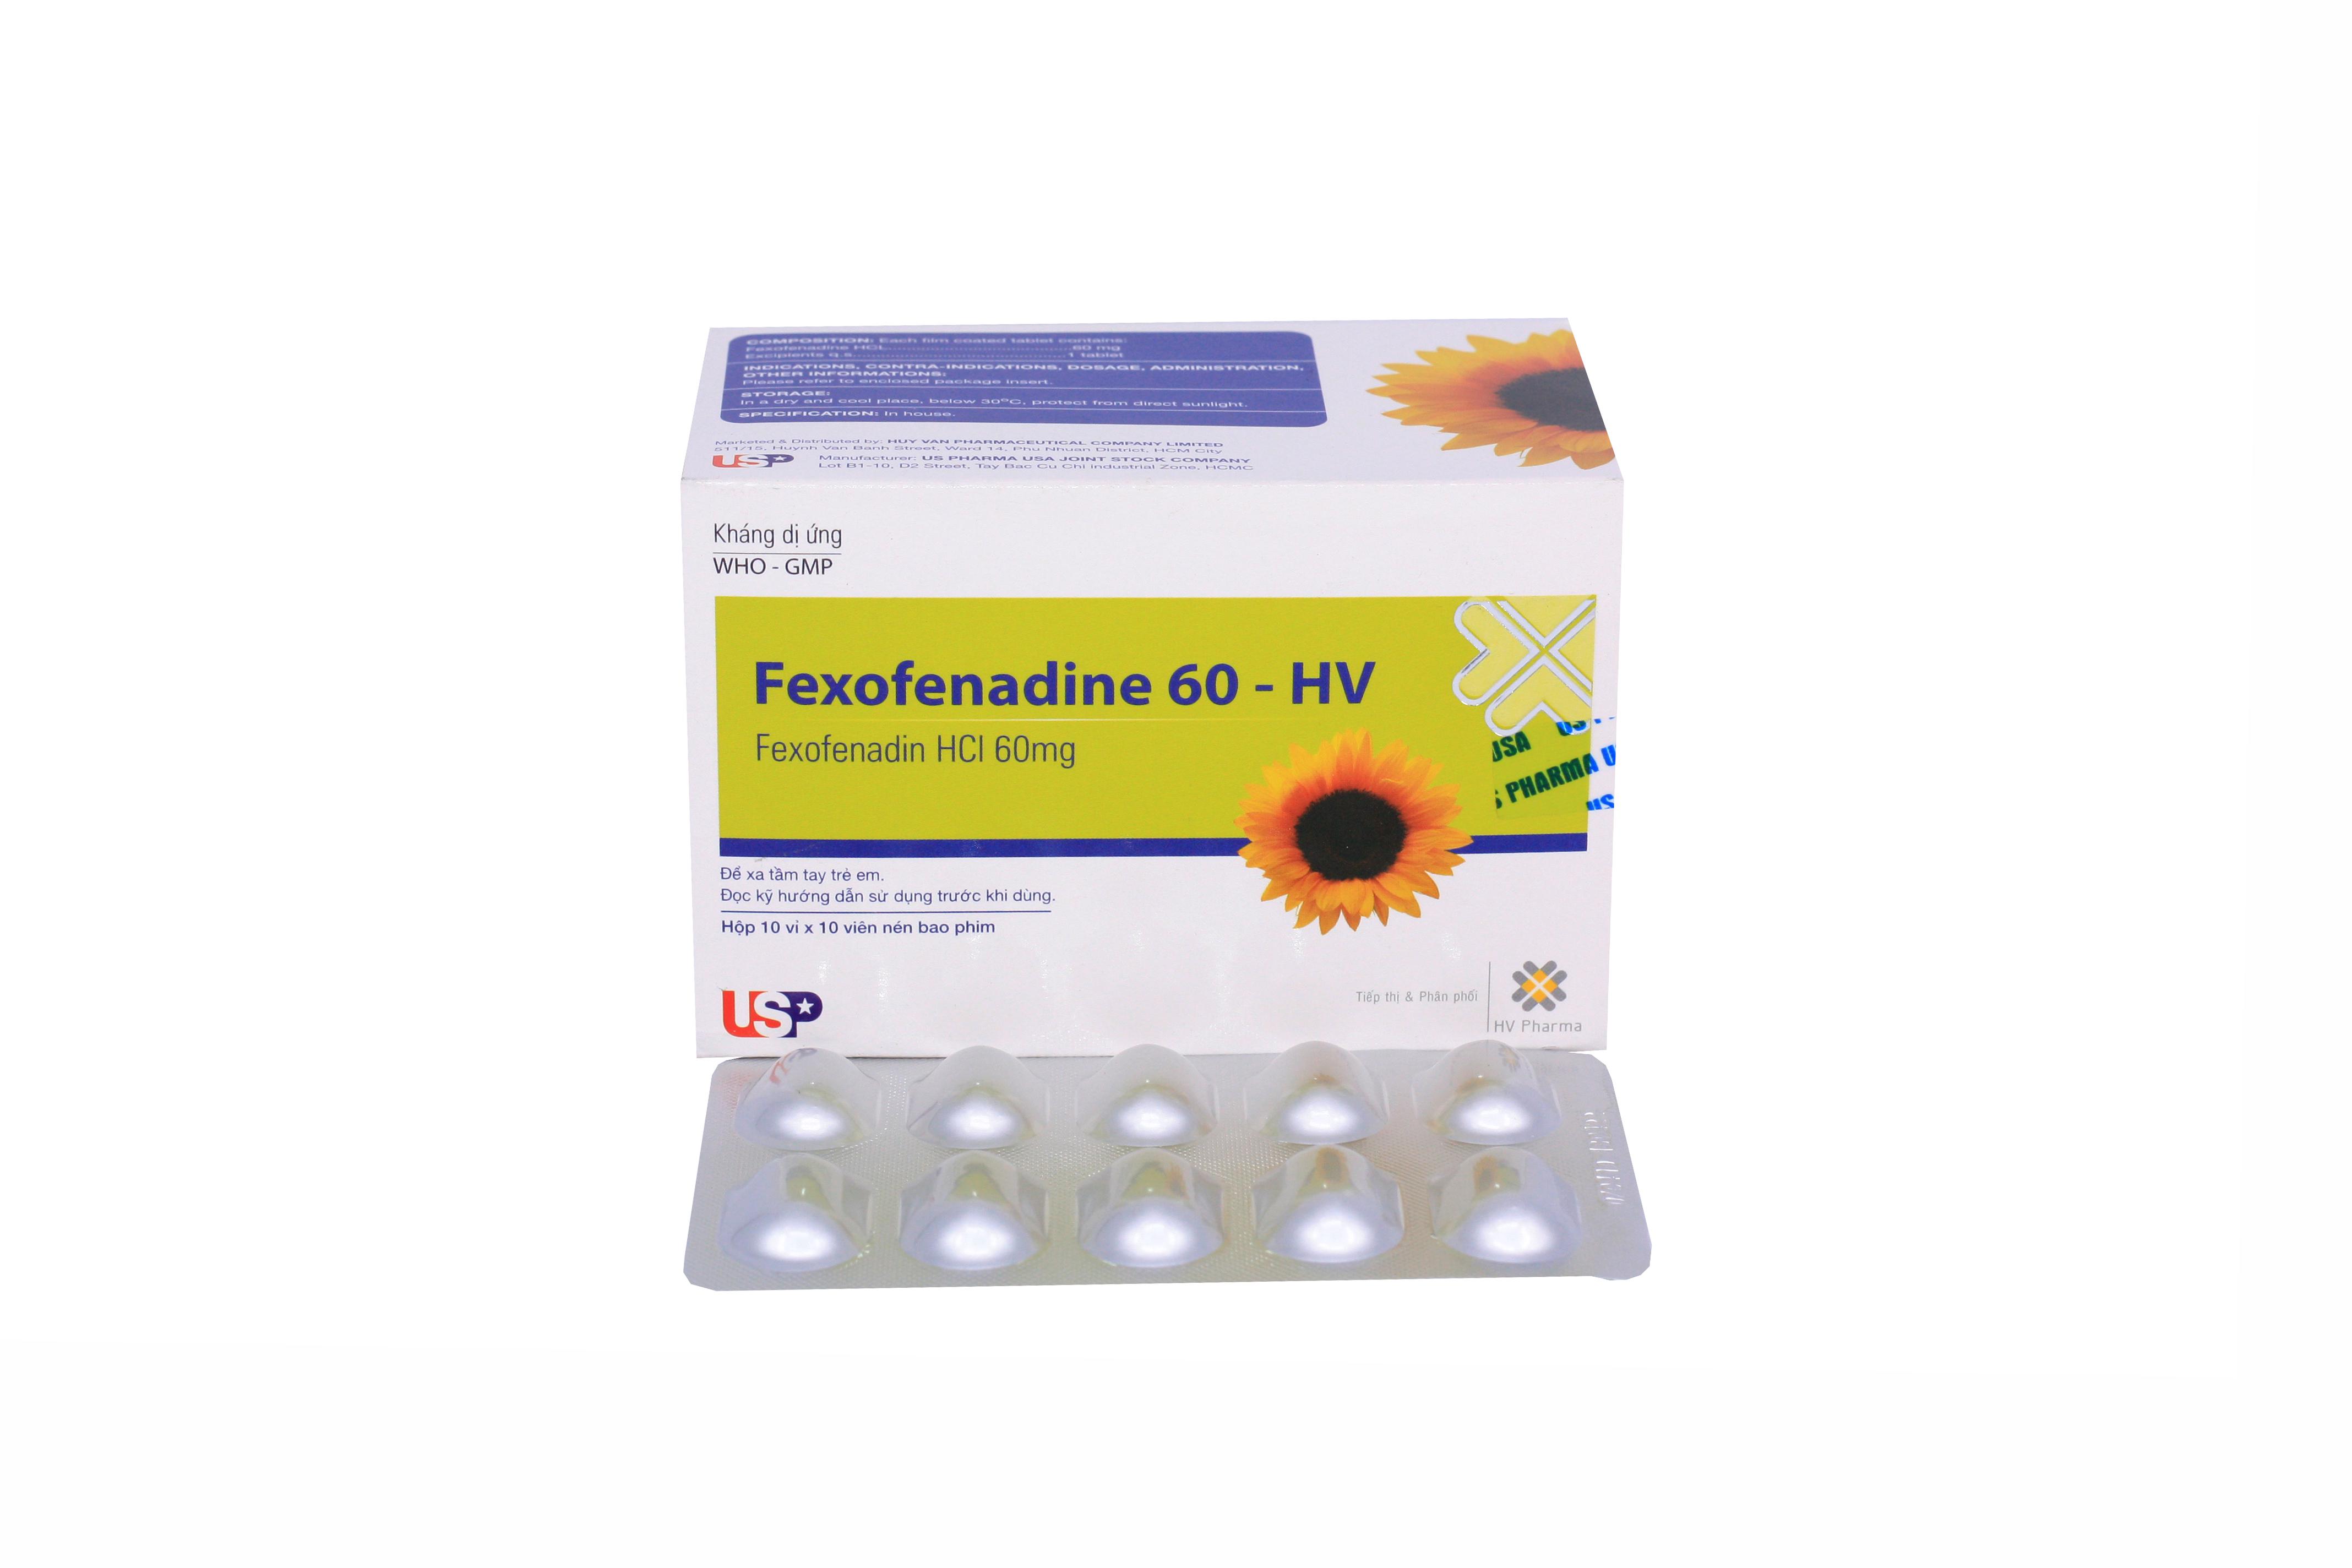 Fexofenadine 60 HV US Pharma (H/100v)